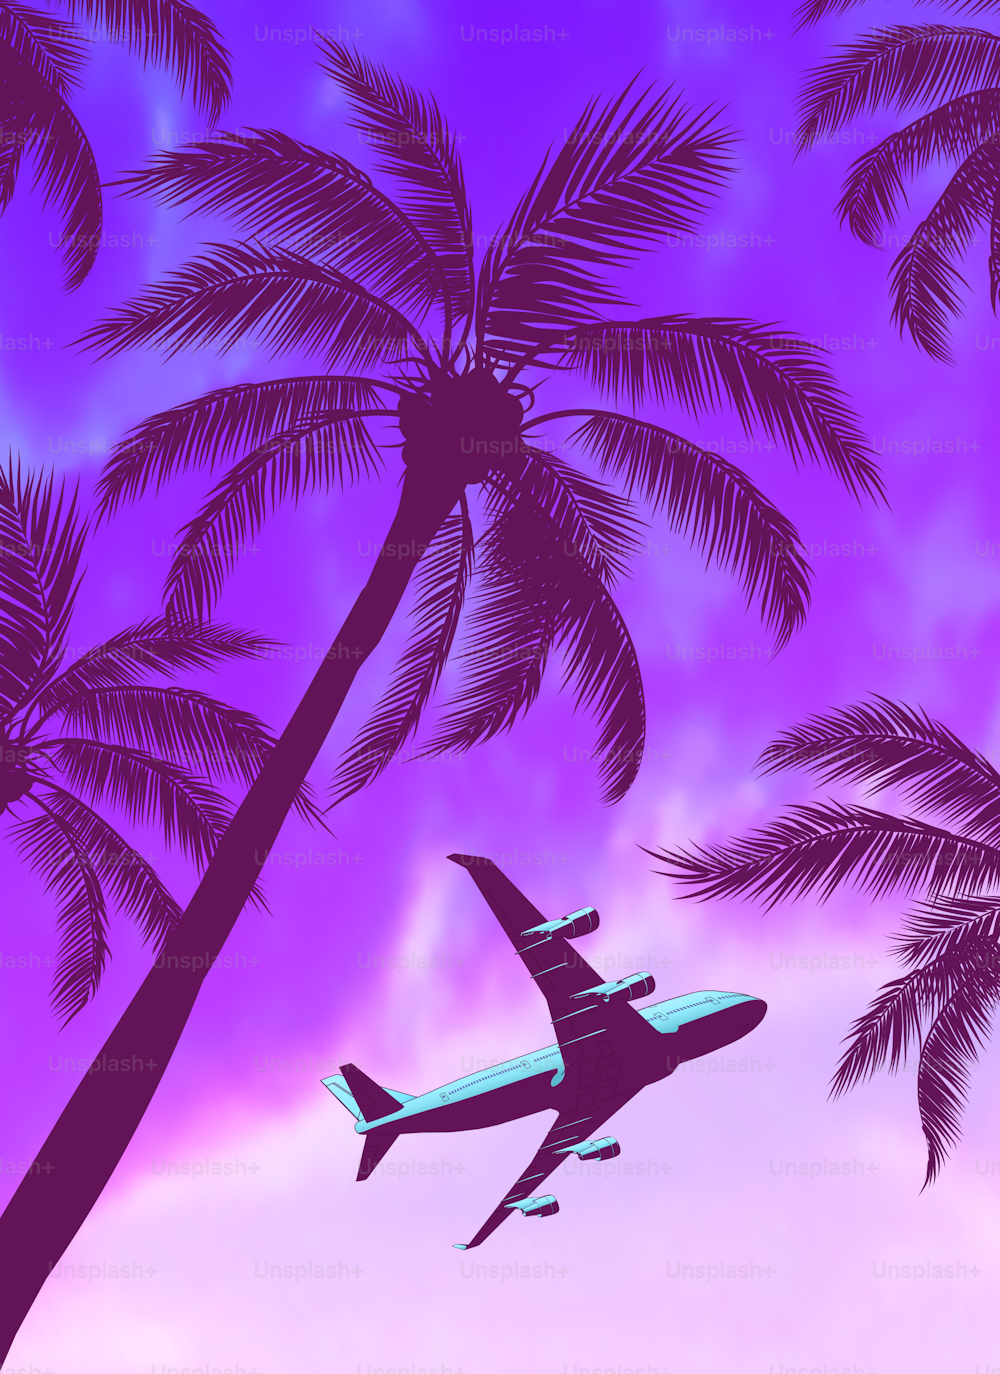 Aereo passeggeri sopra le palme con un bellissimo tramonto blu, verde, giallo. illustrazione vettoriale.